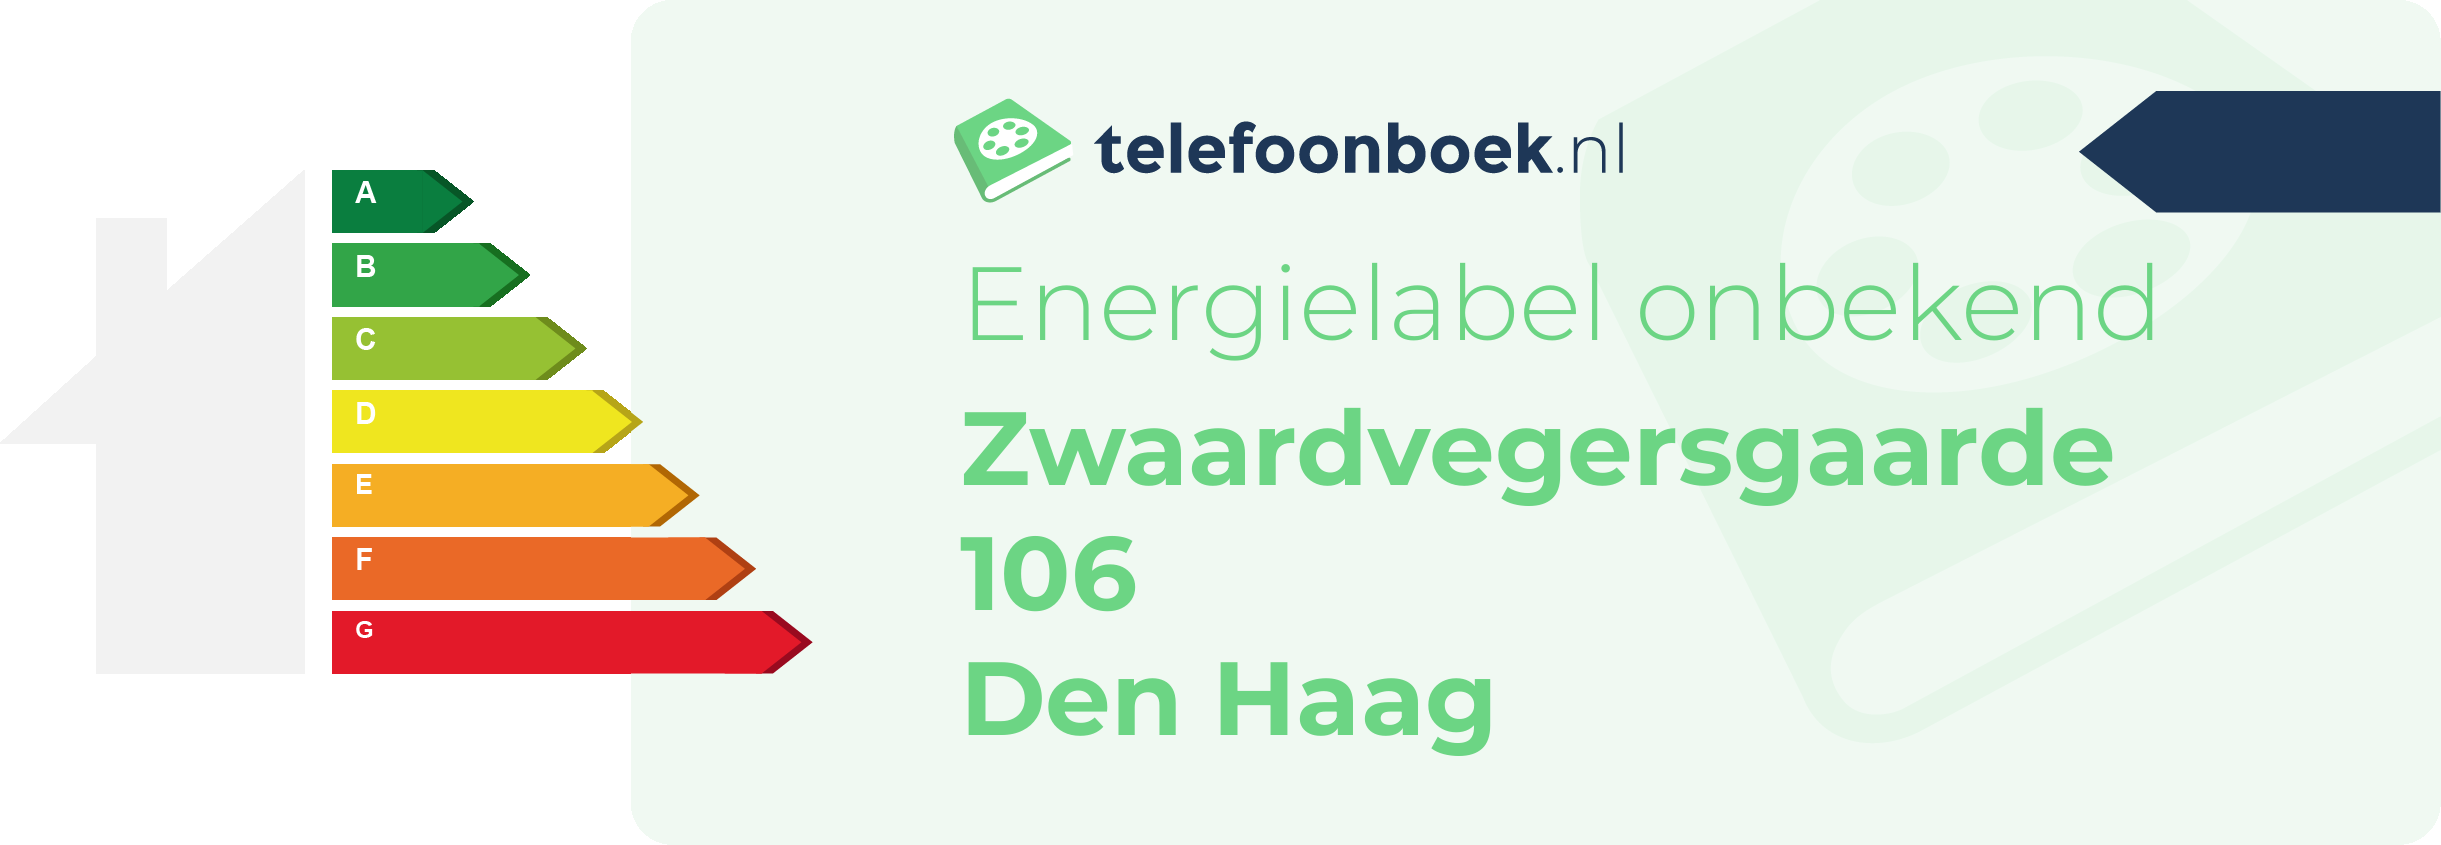 Energielabel Zwaardvegersgaarde 106 Den Haag